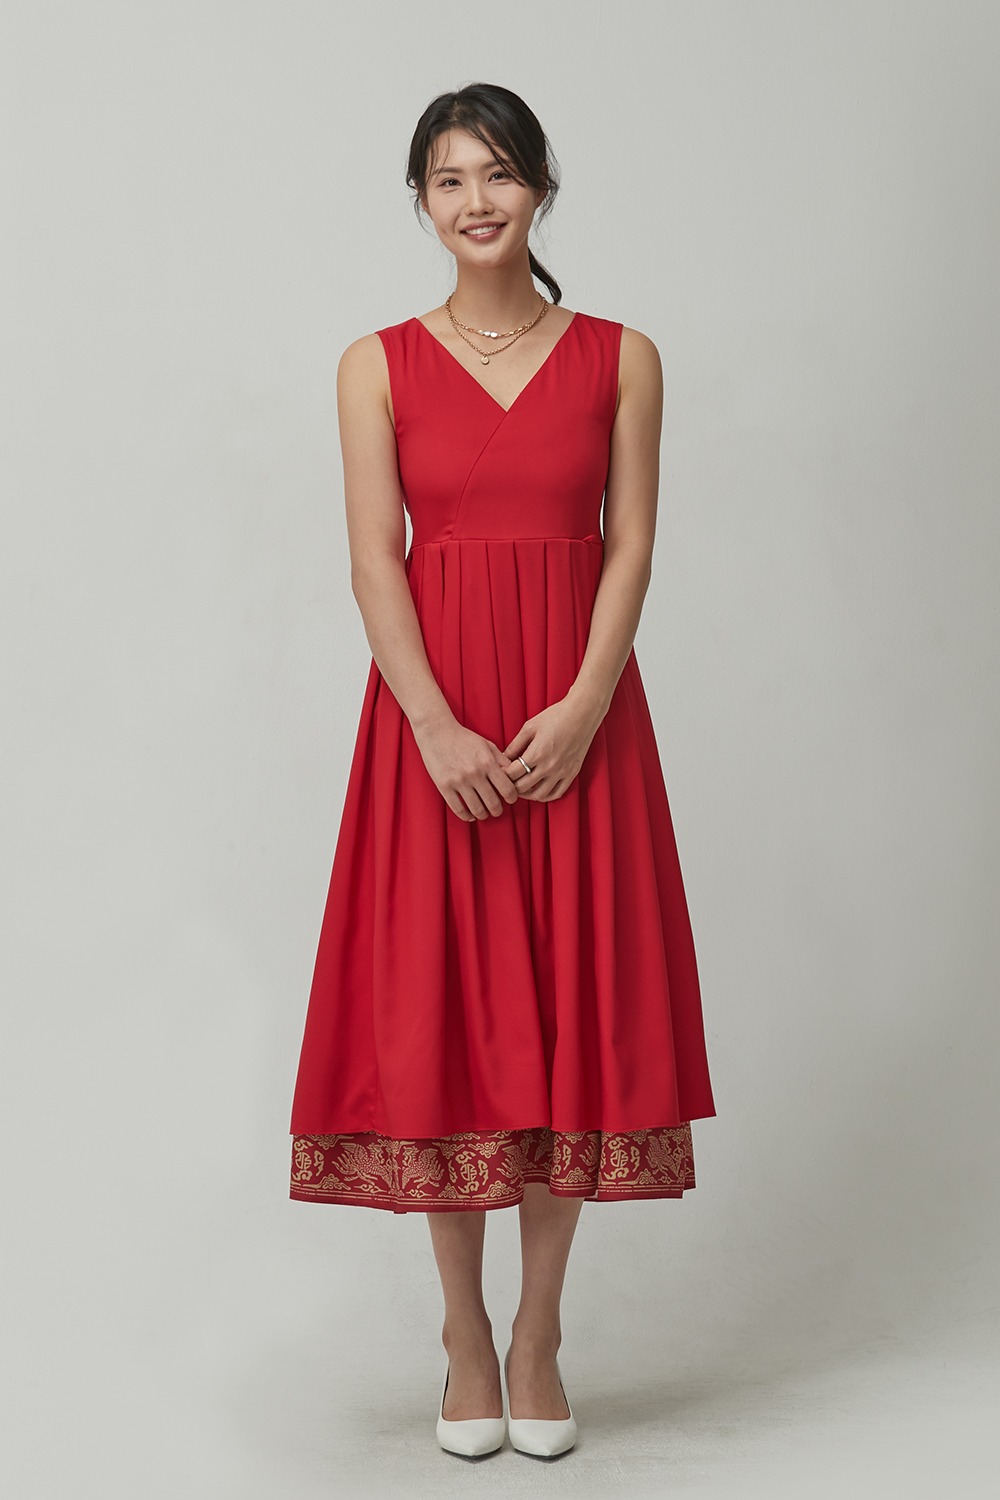 Royal GoldFoil Sran Dress [Red]